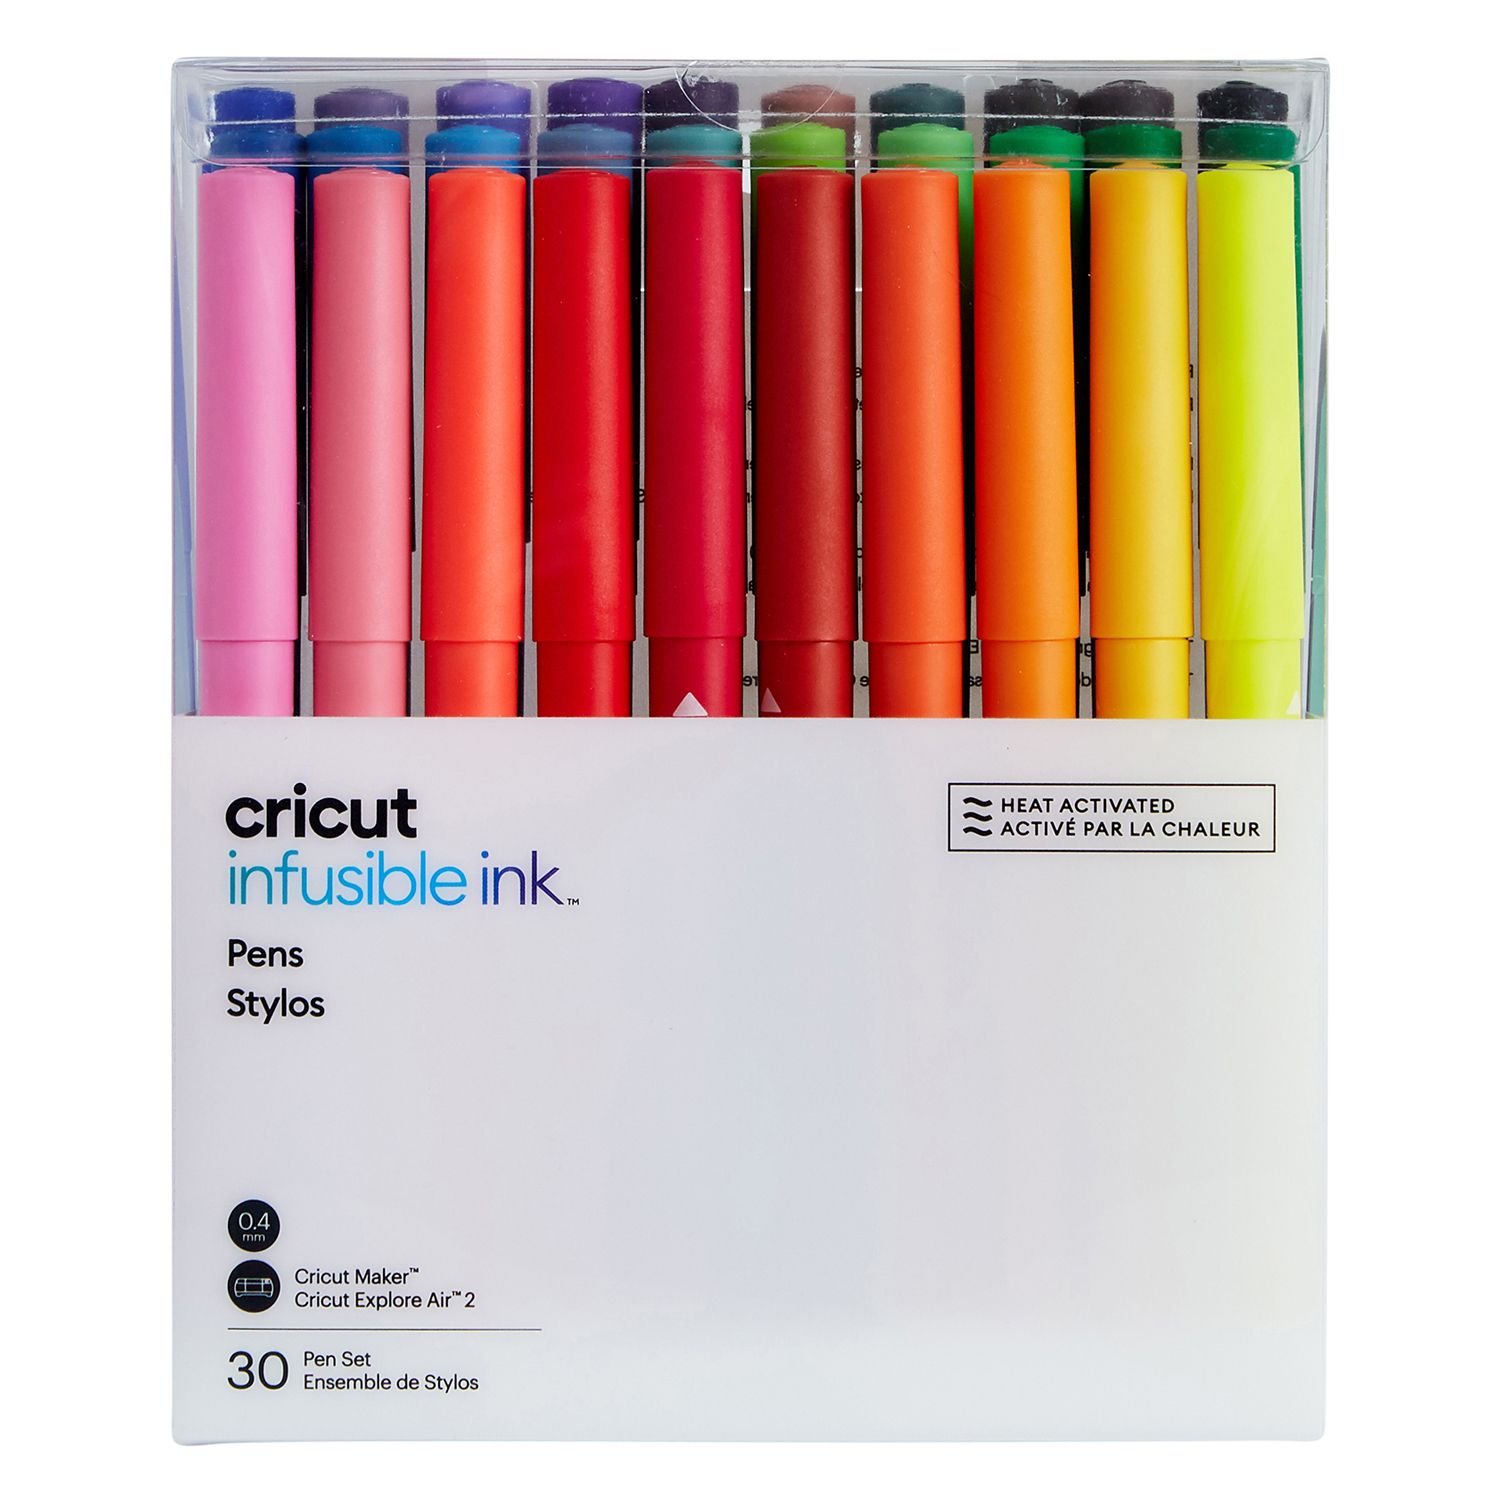 WallDeca Felt Tip Pens, Fine Point (0.5mm), Assorted Rainbow